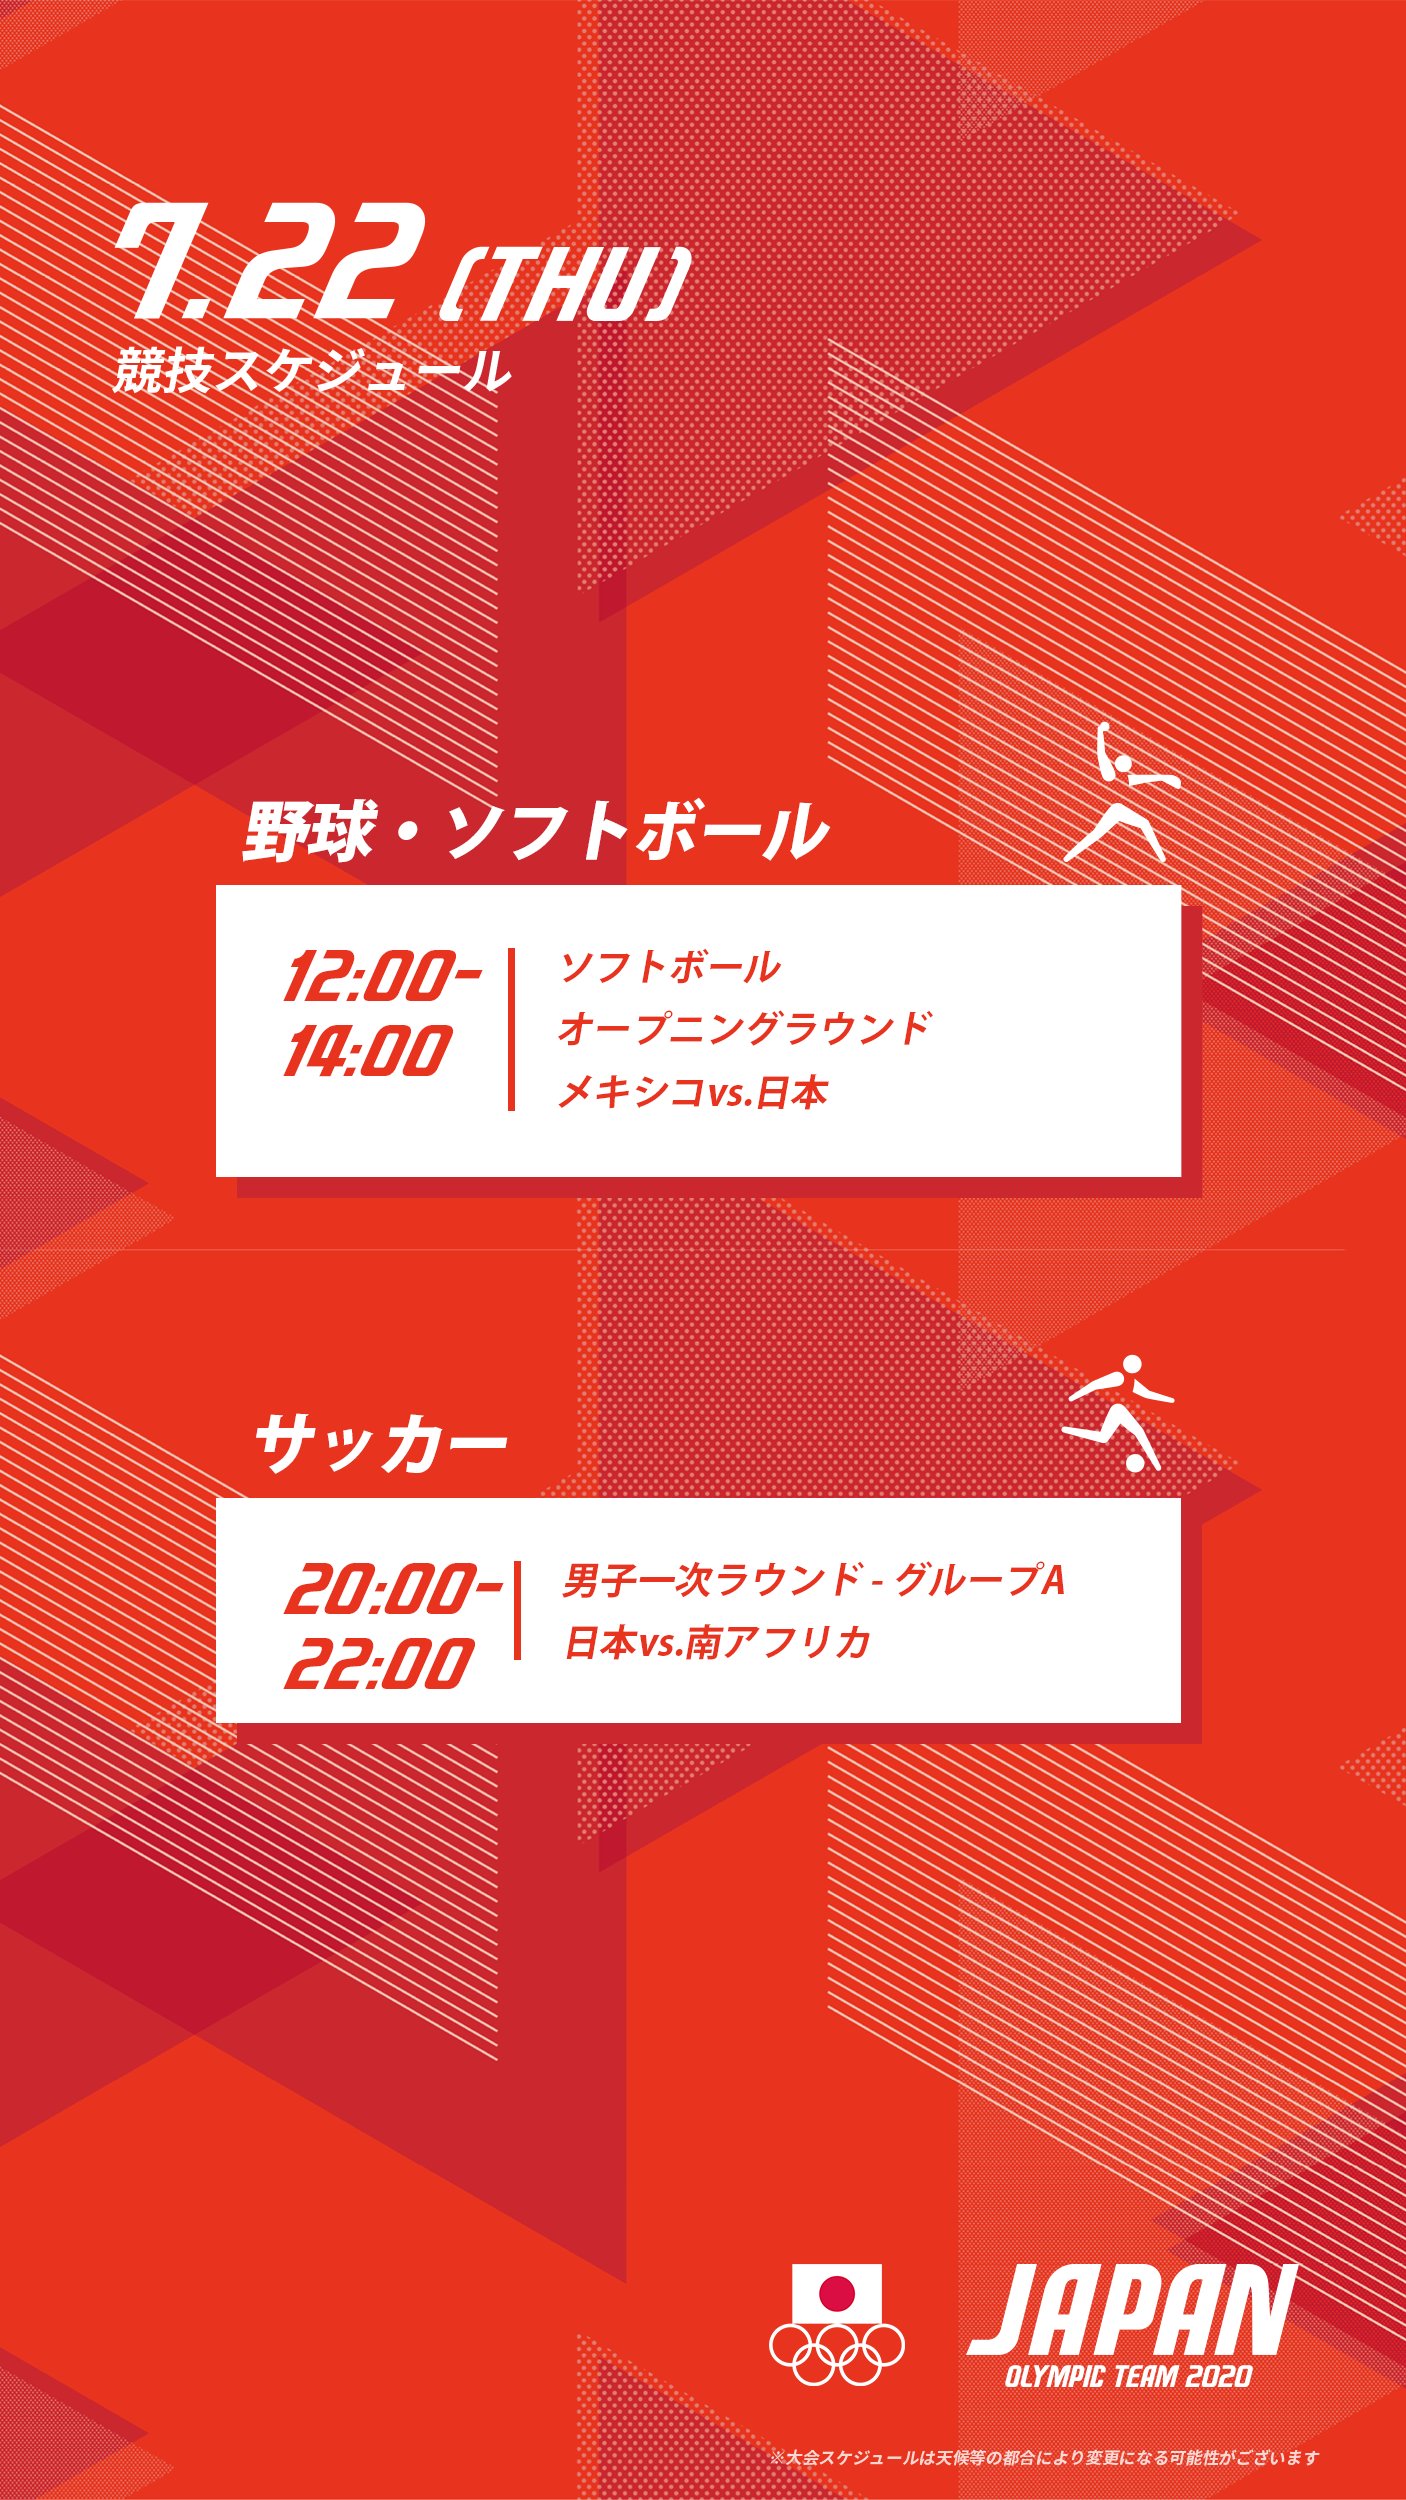 Team Japan 明日の競技スケジュール 7 22 木 の競技をチェック この日から サッカー 男子日本代表の試合が スタートします がんばれニッポン Tokyo Teamjapan オリンピック T Co Hd7xq6ydlz Twitter